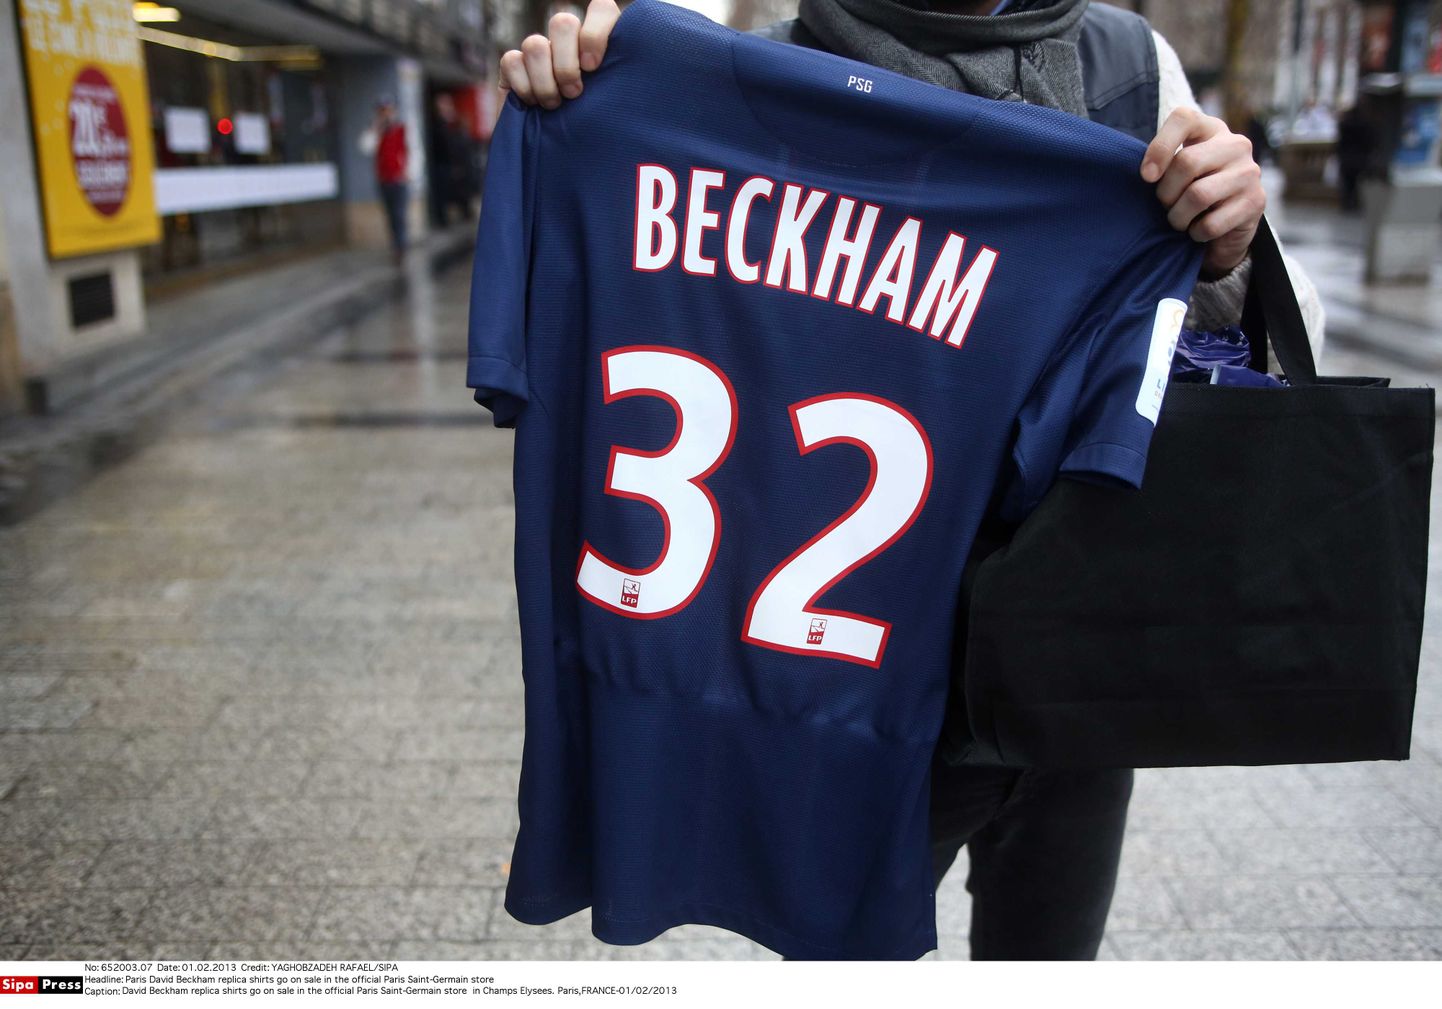 David Beckhami mängusärgid on kuum kauo ja nende pealt teenib jalgpallur miljoneid eurosid.